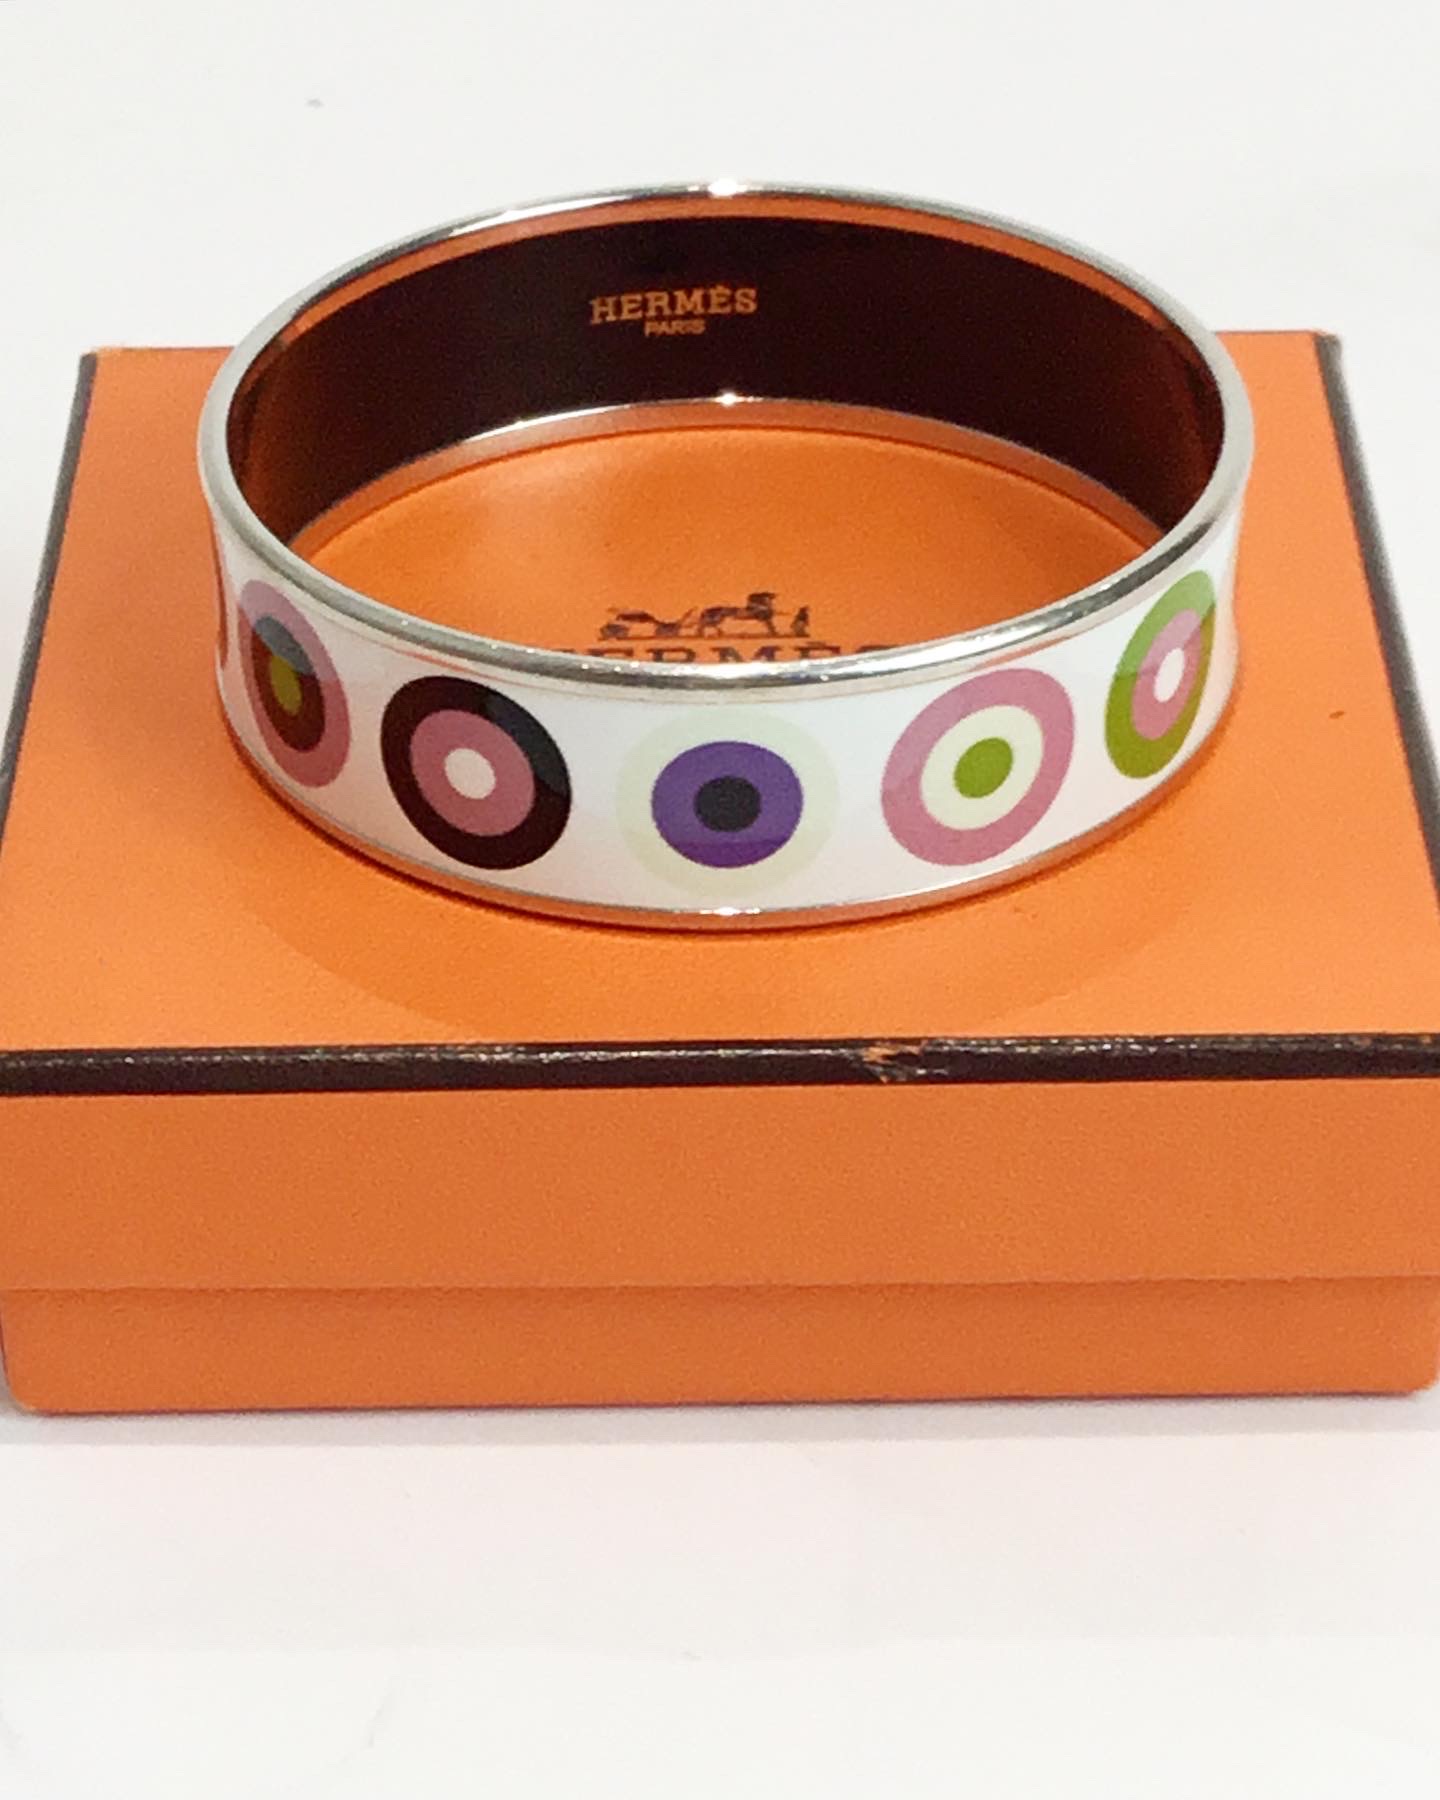 bracelet-hermes-emaillé-émail-aurore-morisse-luxe-bijoux-idée-cadeau-liège-affaireconclue-31